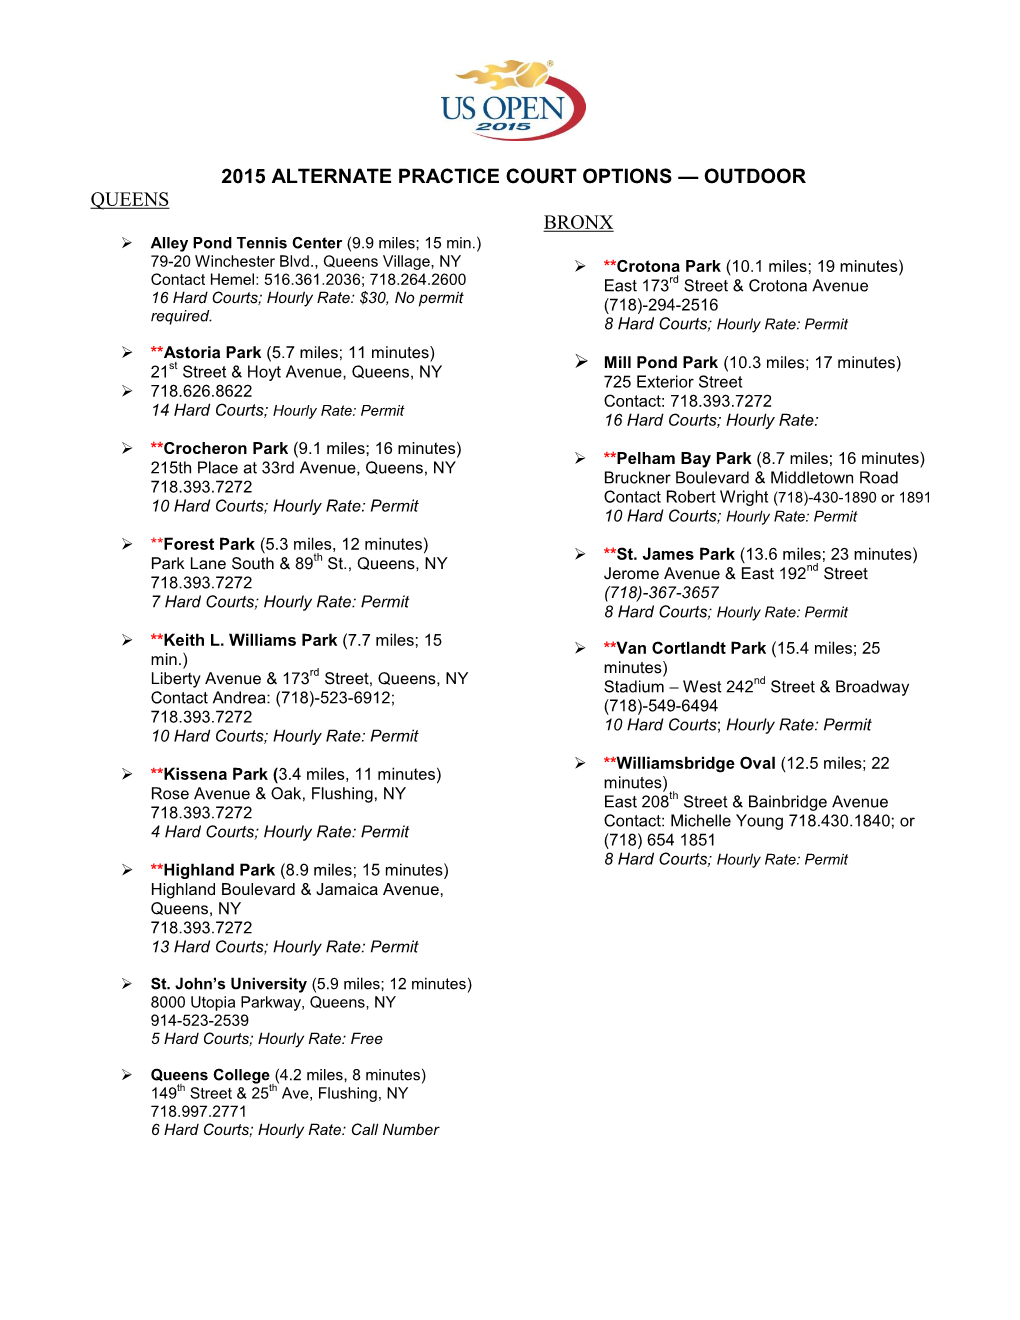 2015 Alternate Practice Court Options — Outdoor